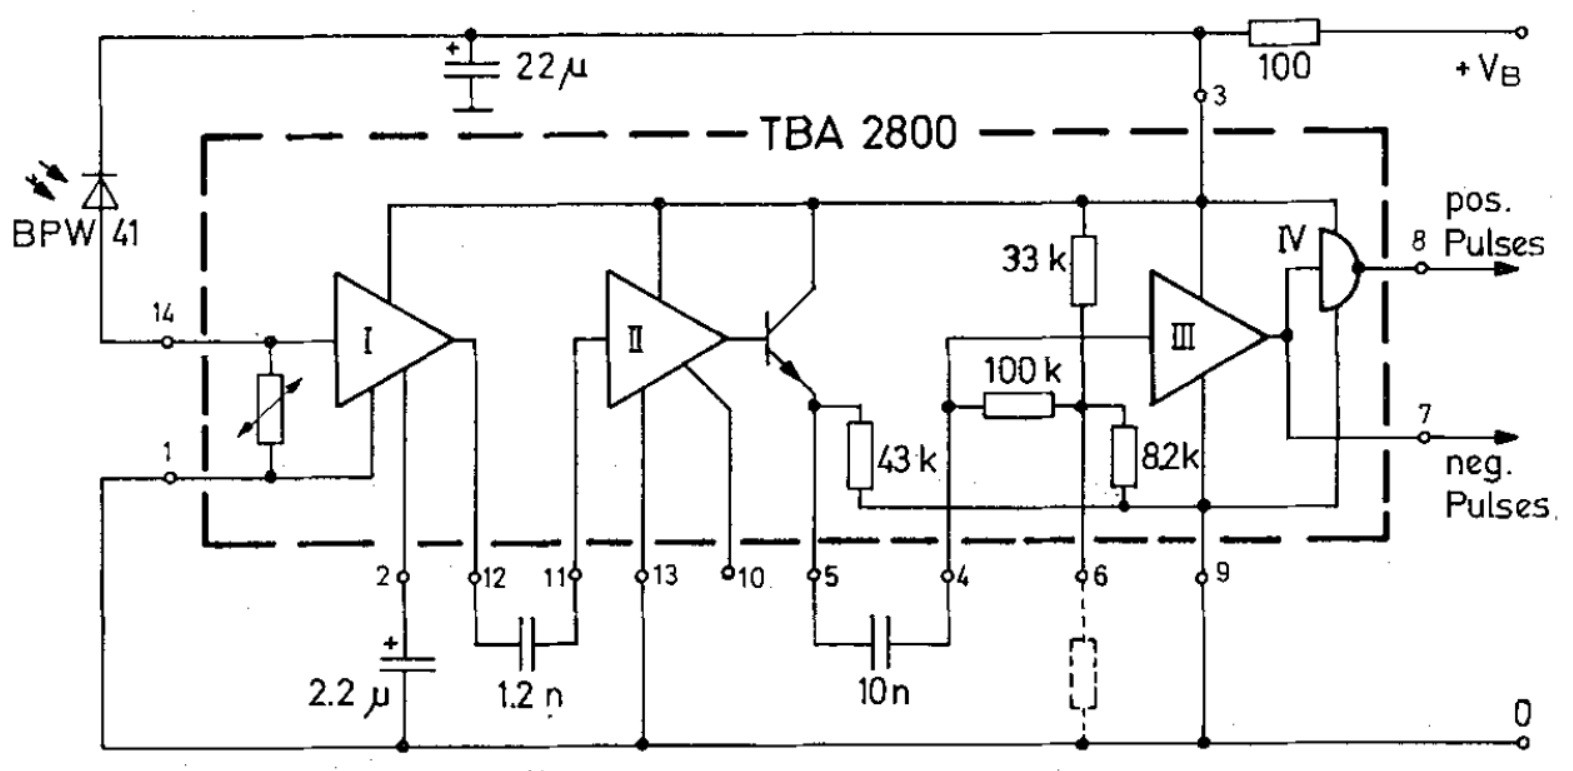 Tba что это. Tba2800. Tba810s схема включения. Микросхема tba2800 схема включения. Tba2800 усилитель тока для фотодиода.